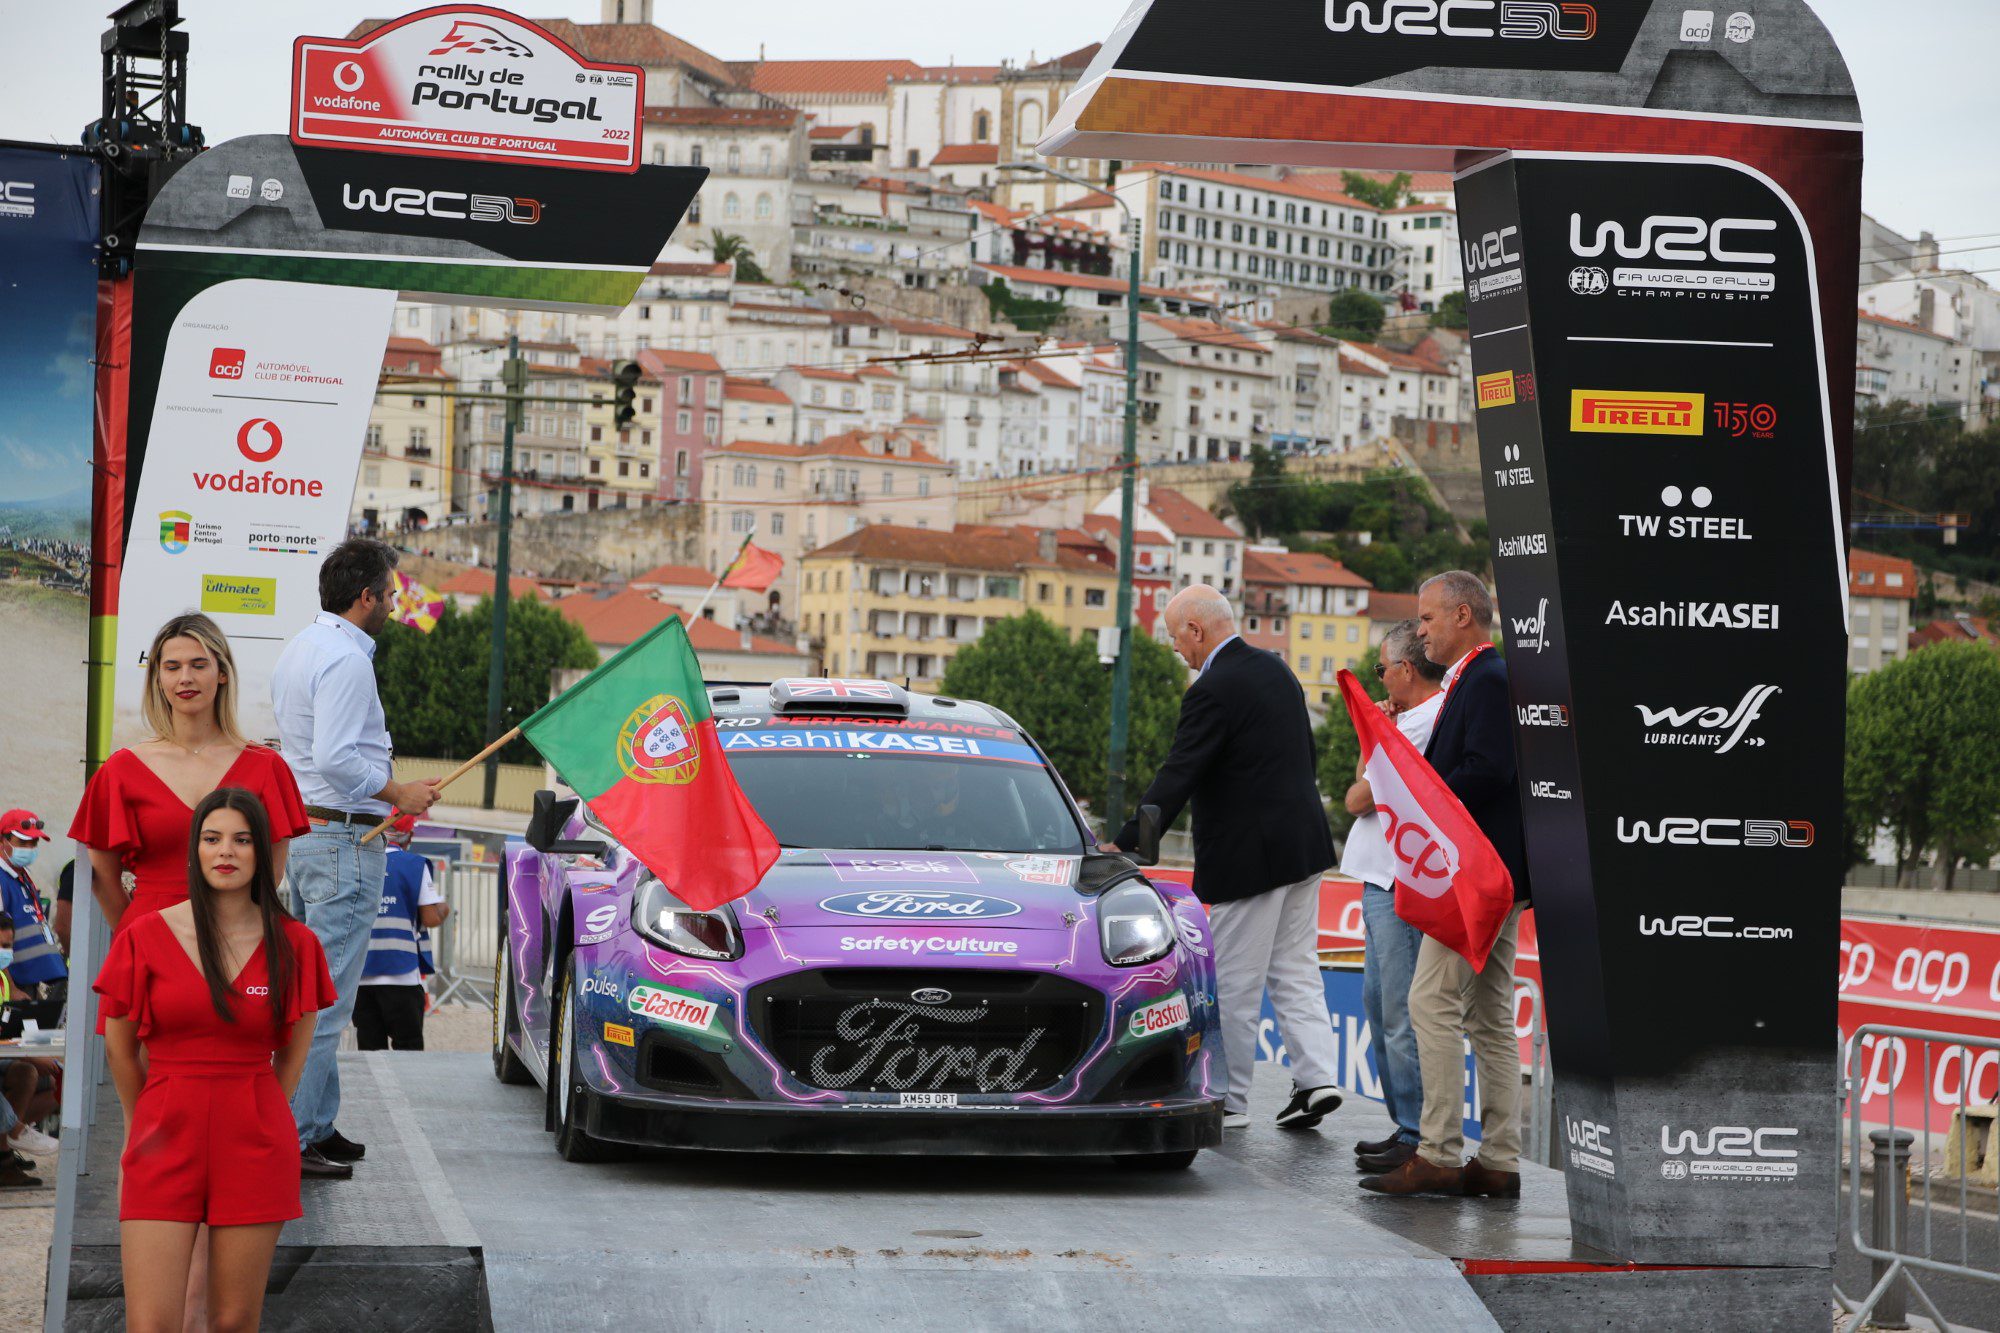 Galeria: as imagens da etapa de Portugal do WRC pelas lentes de Jorge Sá